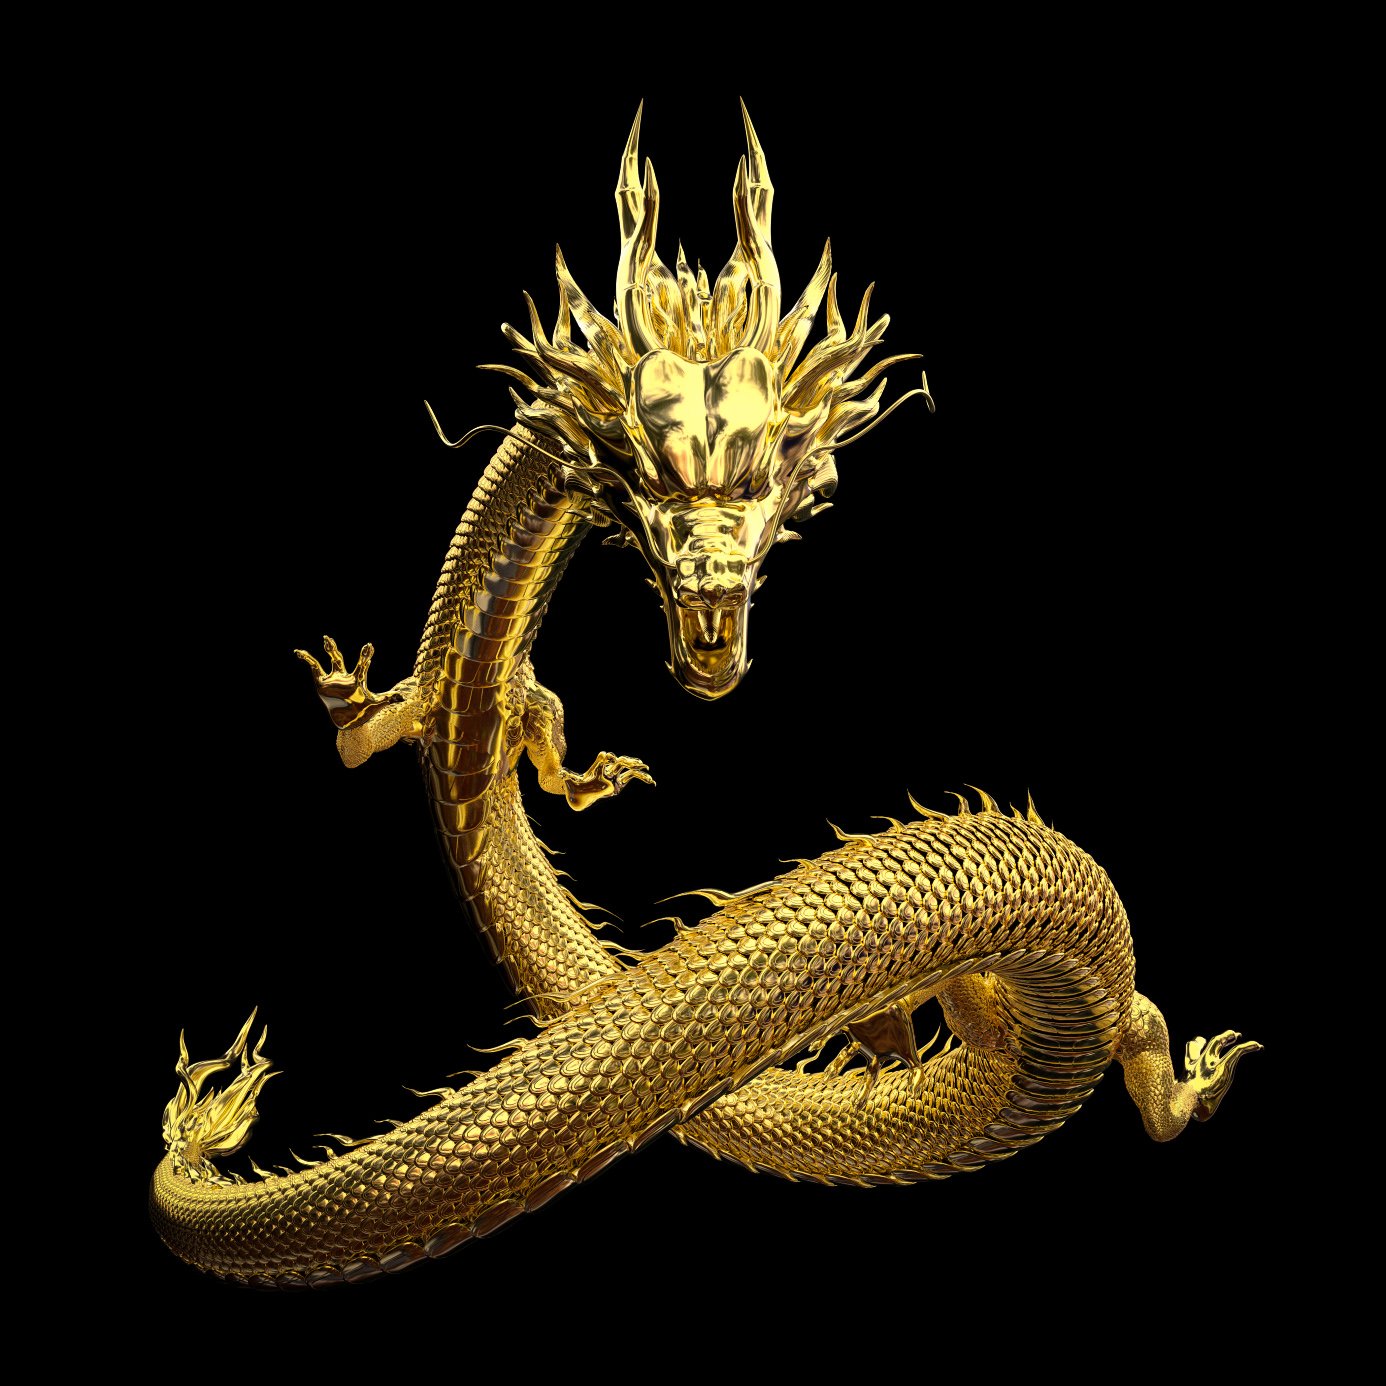 De chinesesche Draach, och bekannt als Lunge, ass eng legendär Kreatur an der chinesescher Mythologie.